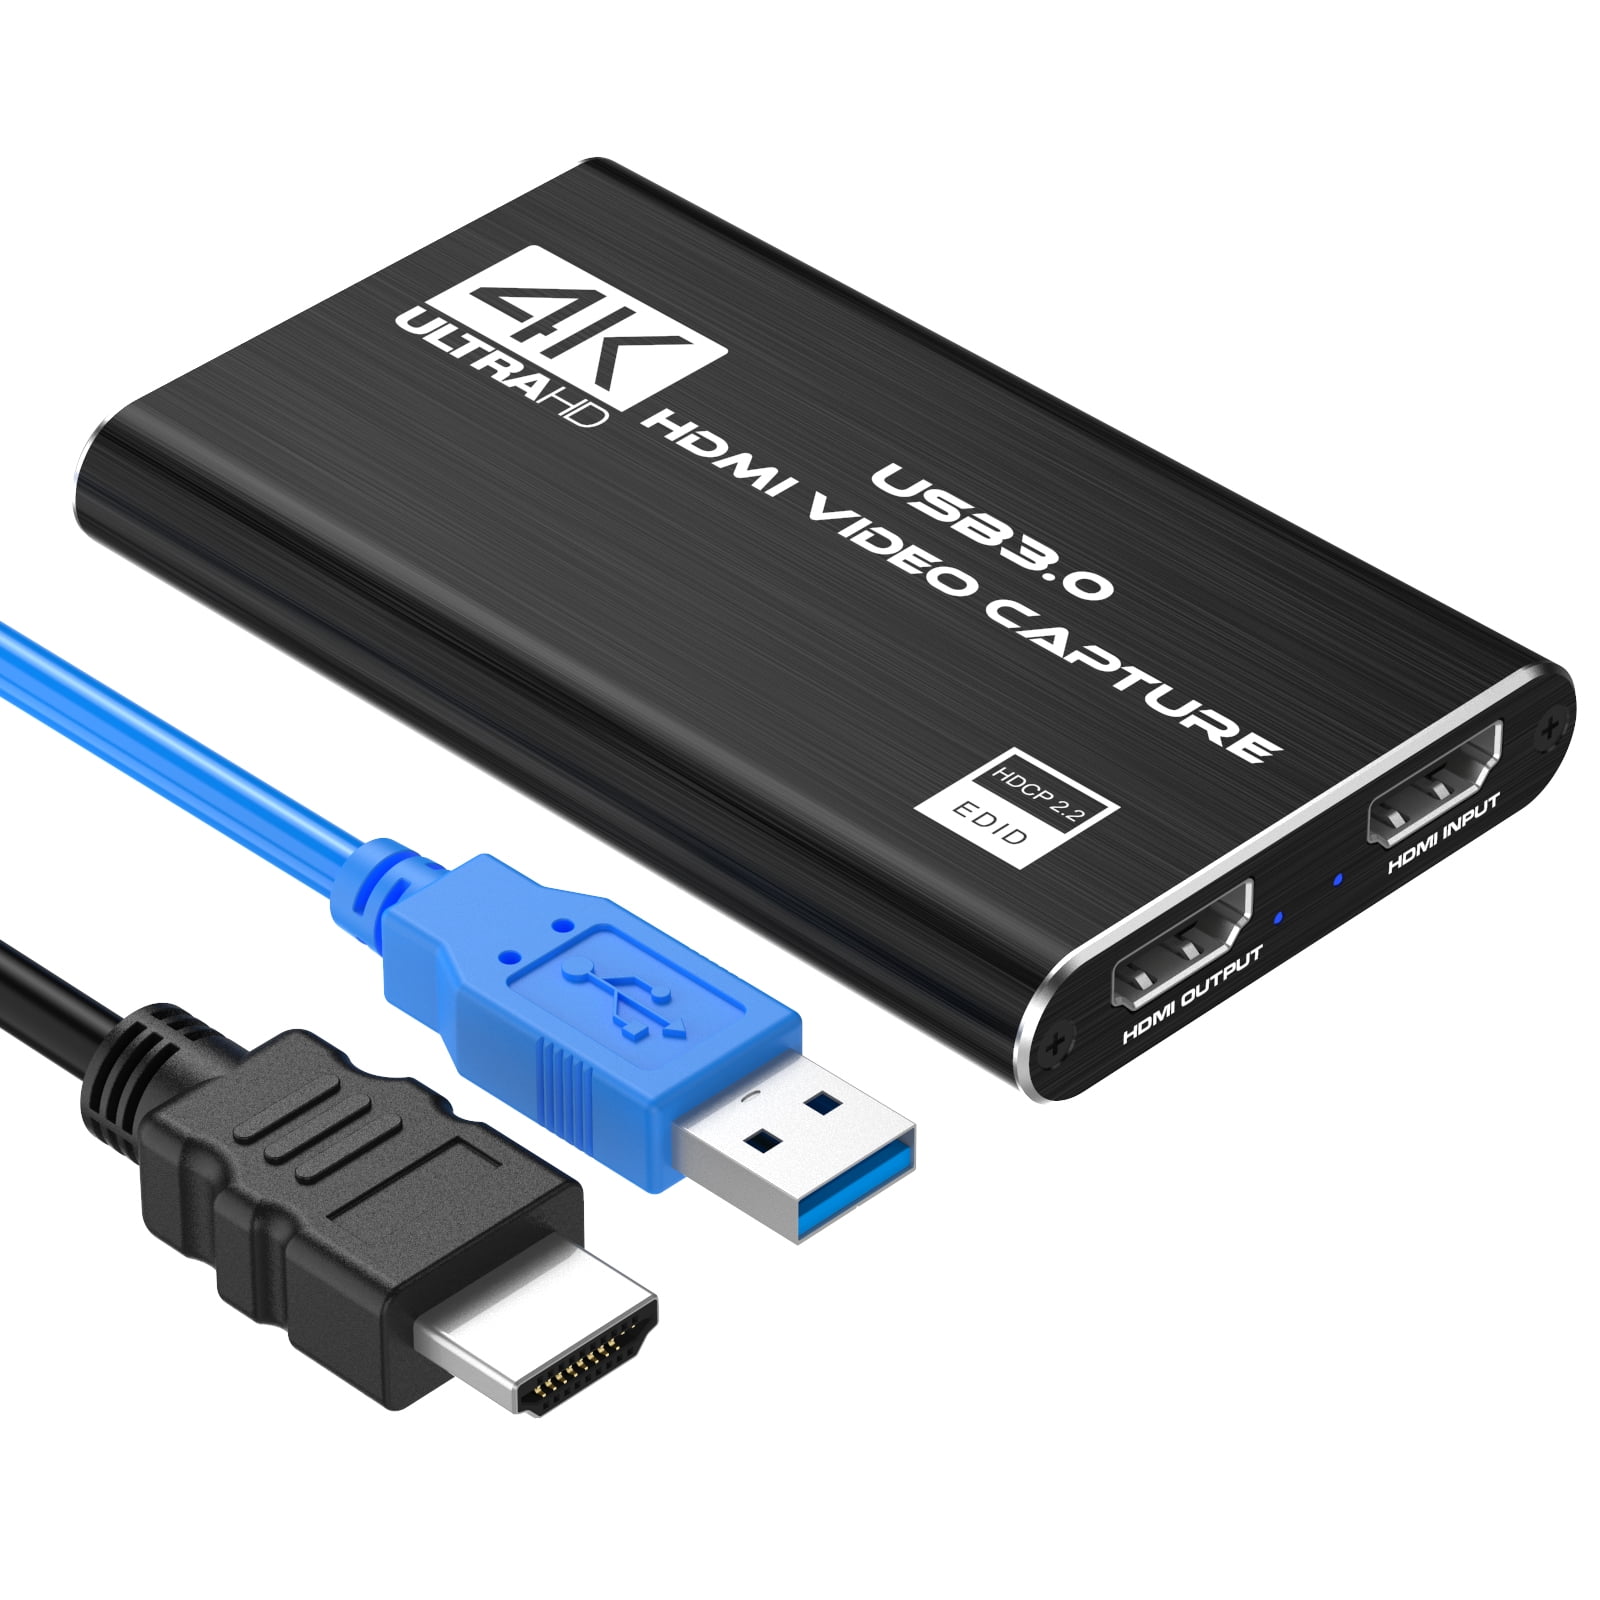 DIGITNOW! 4K 60Hz HDMI Video Capture Card, USB 3.0 mit Mikrofon